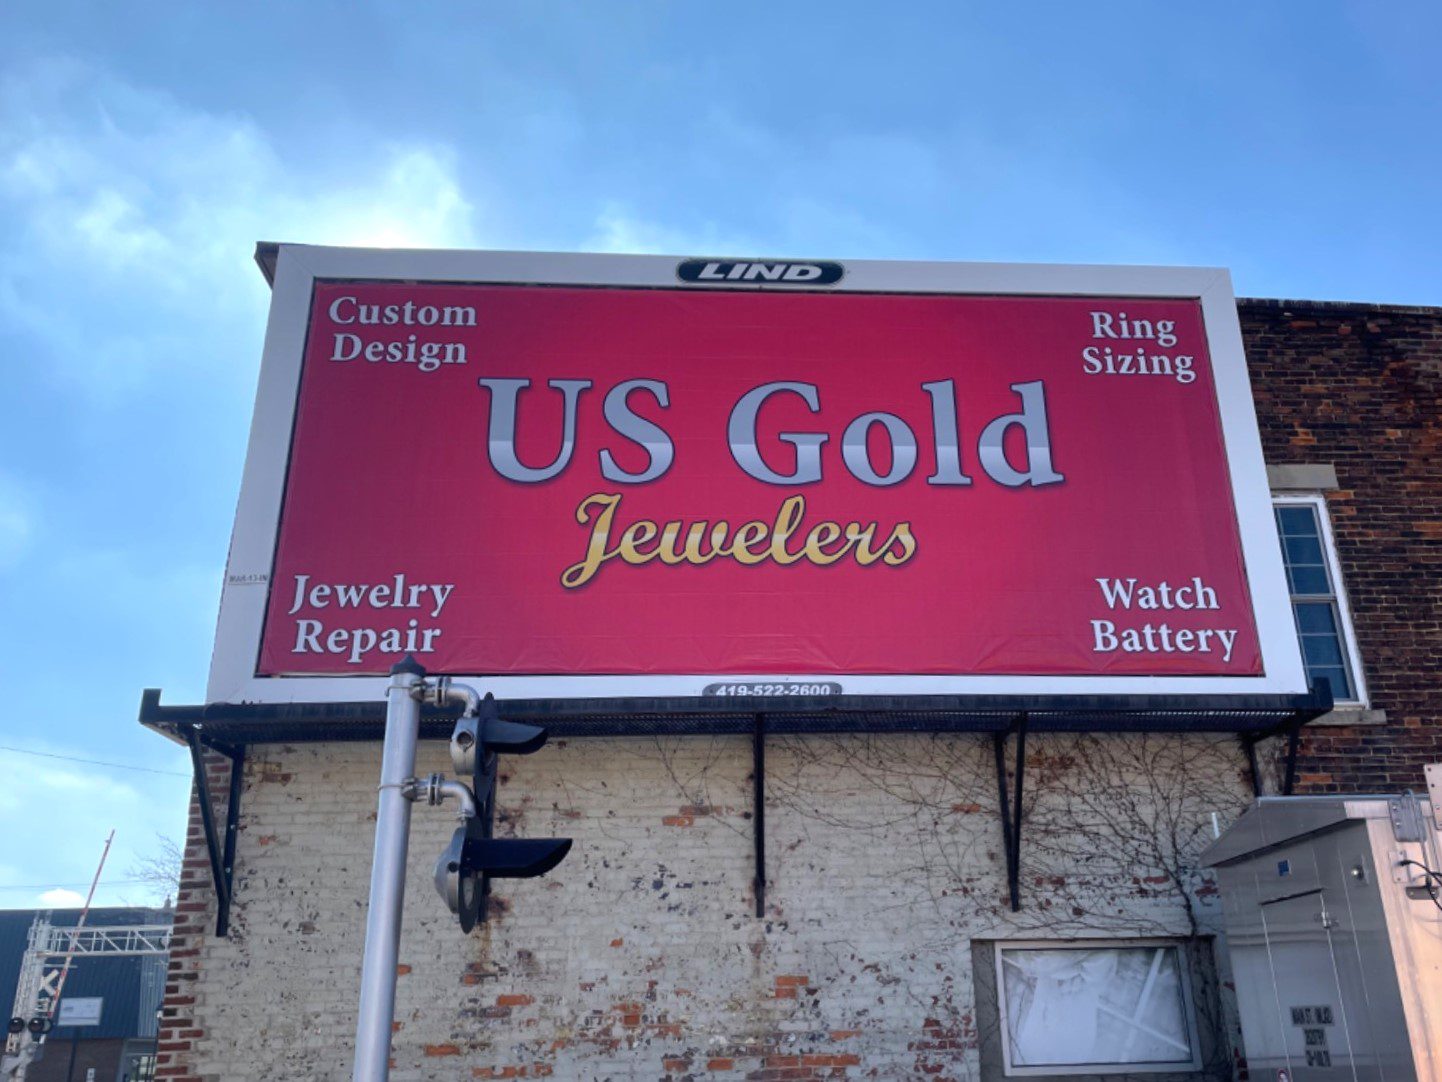 US Gold billboard, jewelry billboard